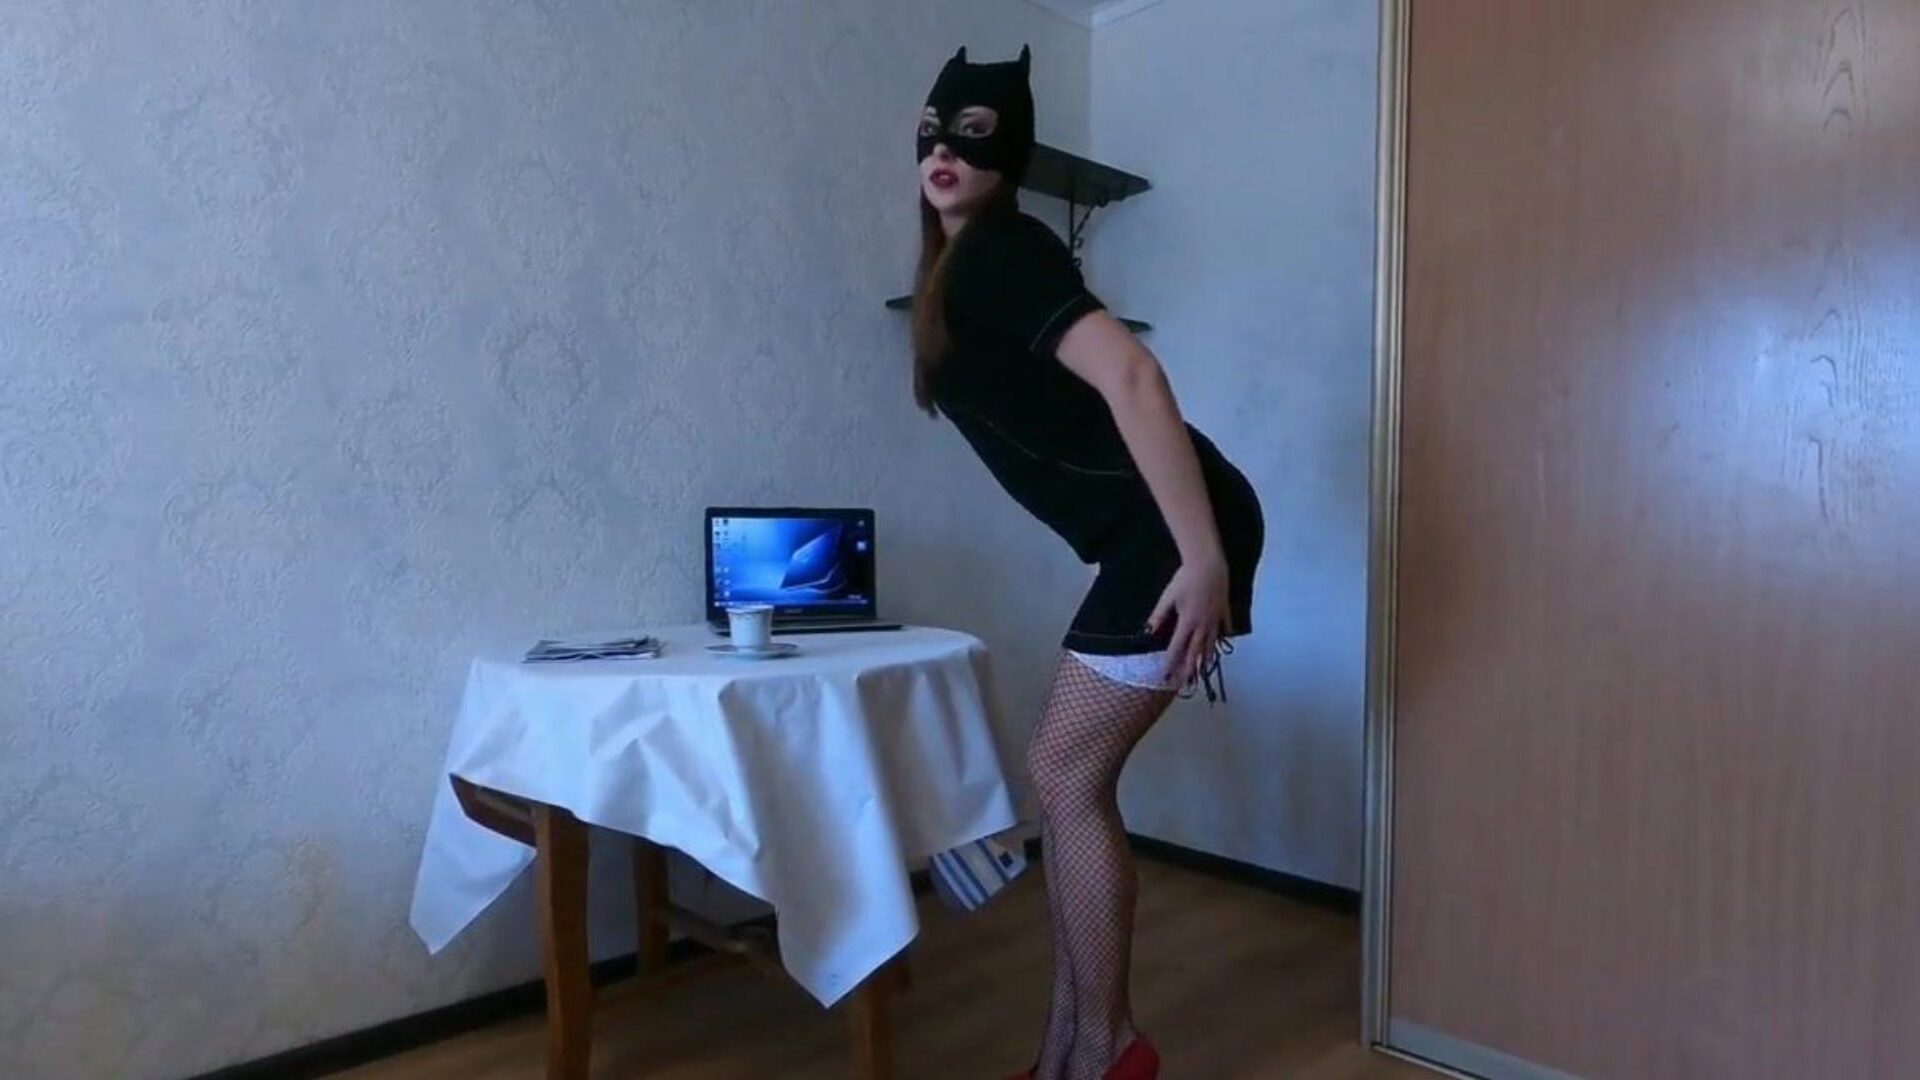 sexy sekretářka tancuje a proužky pro vás, porno 41: xhamster hodinky sexy sekretářka tančí a proužky pro vás epizoda na xhamsteru, nejsilnější web s HD pornohvězdami s mnoha bezplatnými italskými sexy twittery a xxnx sexy porno videa